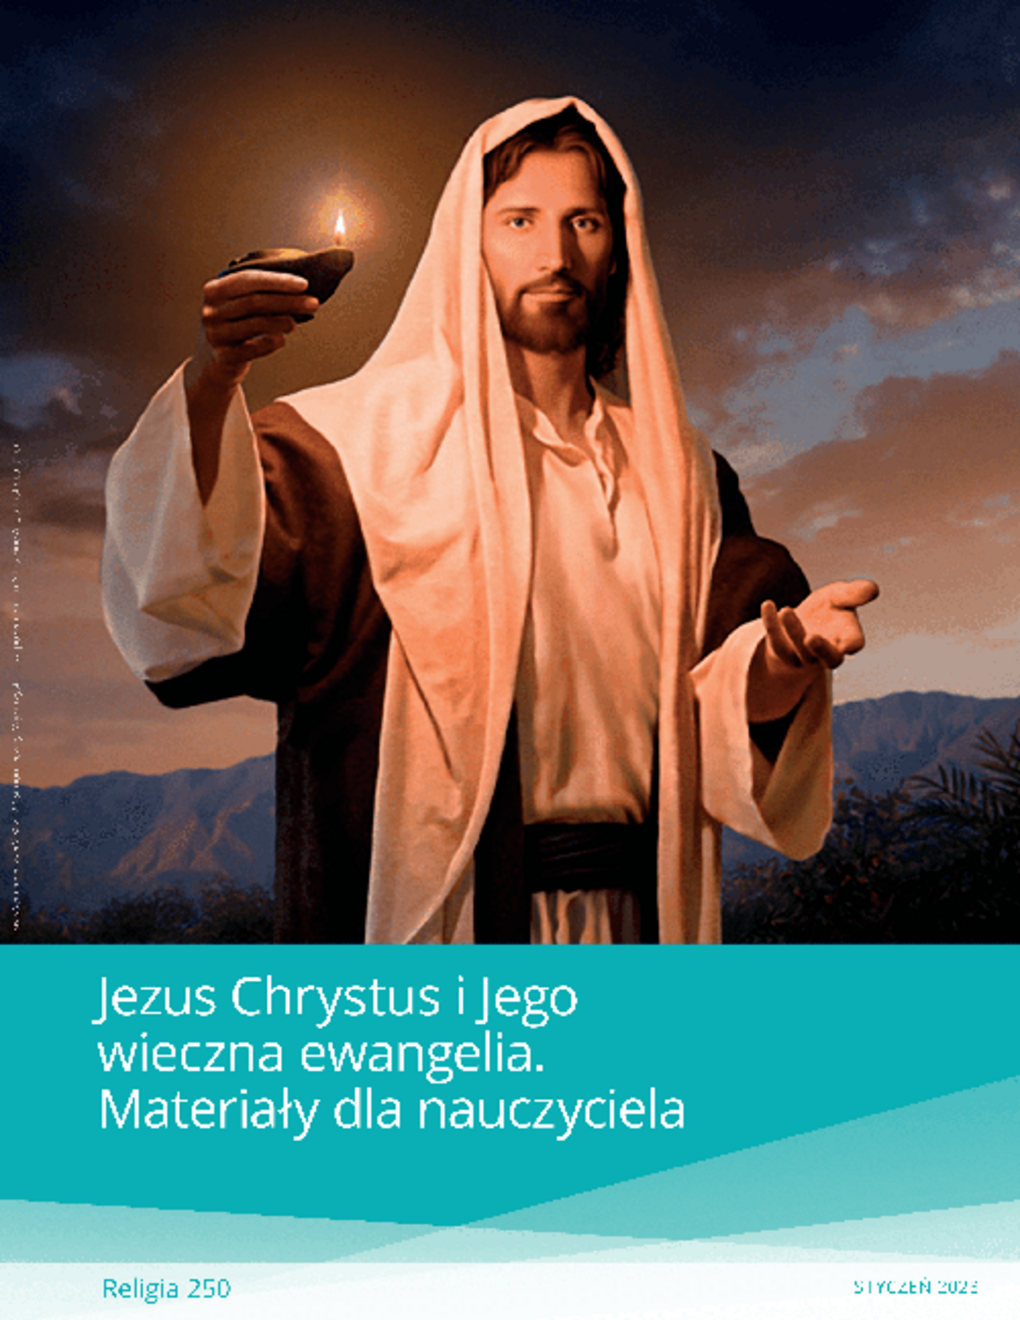 Jezus Chrystus i Jego wieczna ewangelia. Materiały dla nauczyciela (Rel 250)